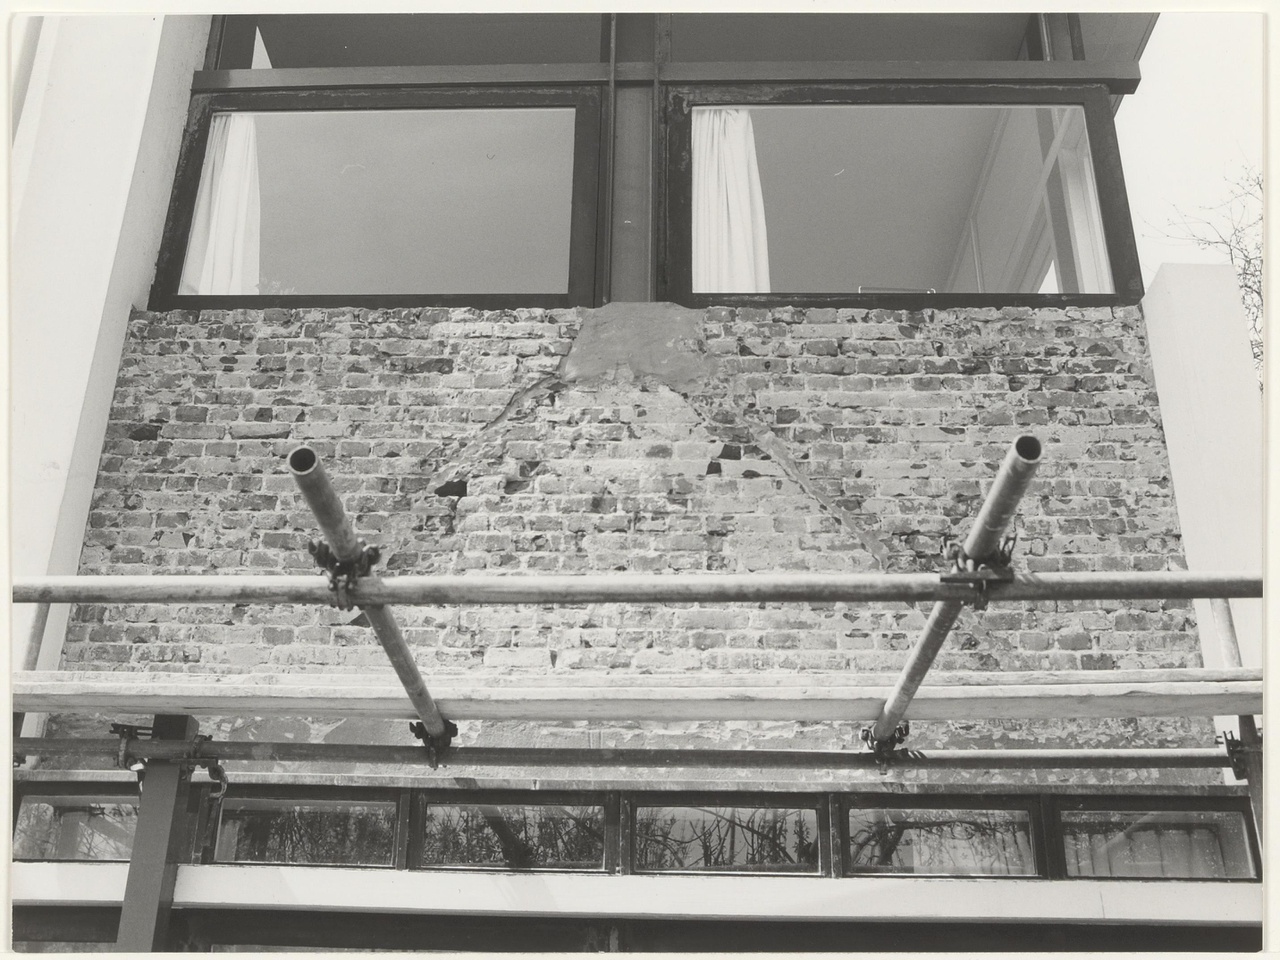 Rietveld Schröderhuis in steigers, reparatie stucwerk door inhakken metselwerk